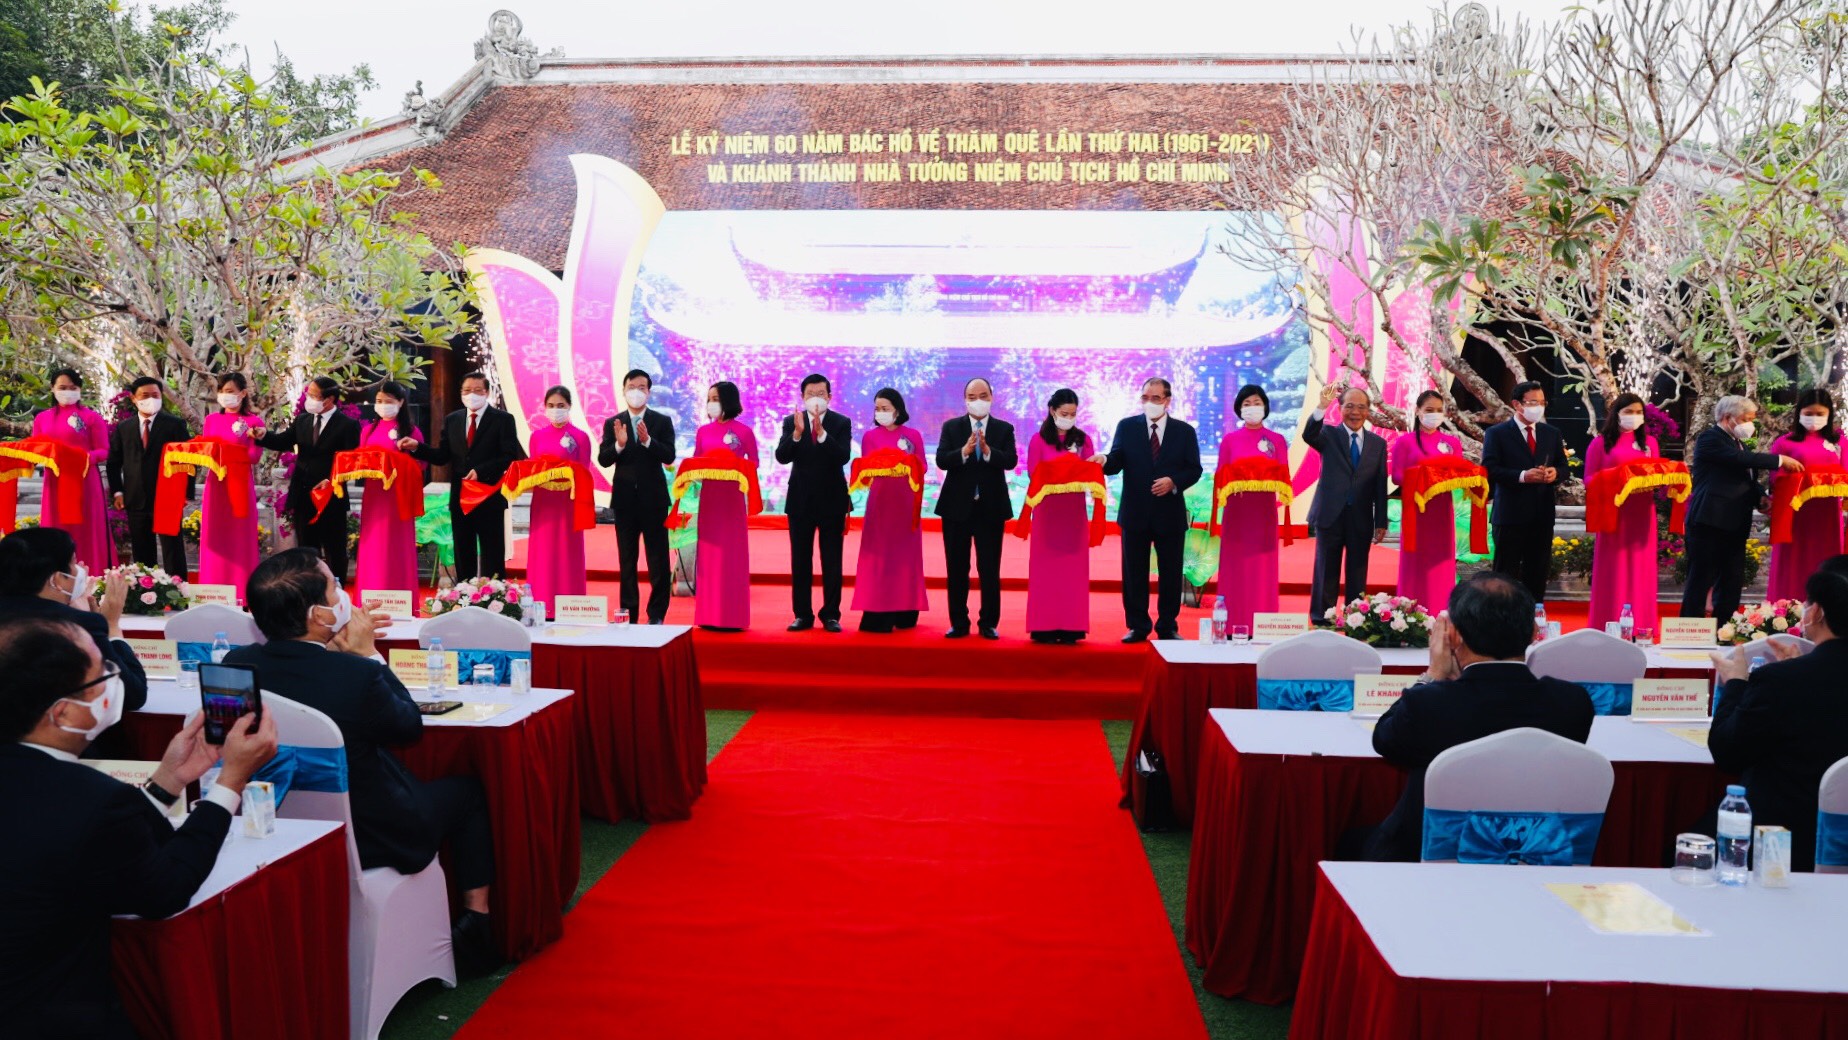 Chủ tịch nước Nguyễn Xuân Phúc cùng các đồng chí lãnh đạo và nguyên lãnh đạo Trung ương cắt băng khánh thành công trình Nhà tưởng niệm Chủ tịch Hồ Chí Minh tại Khu di tích lịch sử quốc gia đặc biệt Kim Liên.